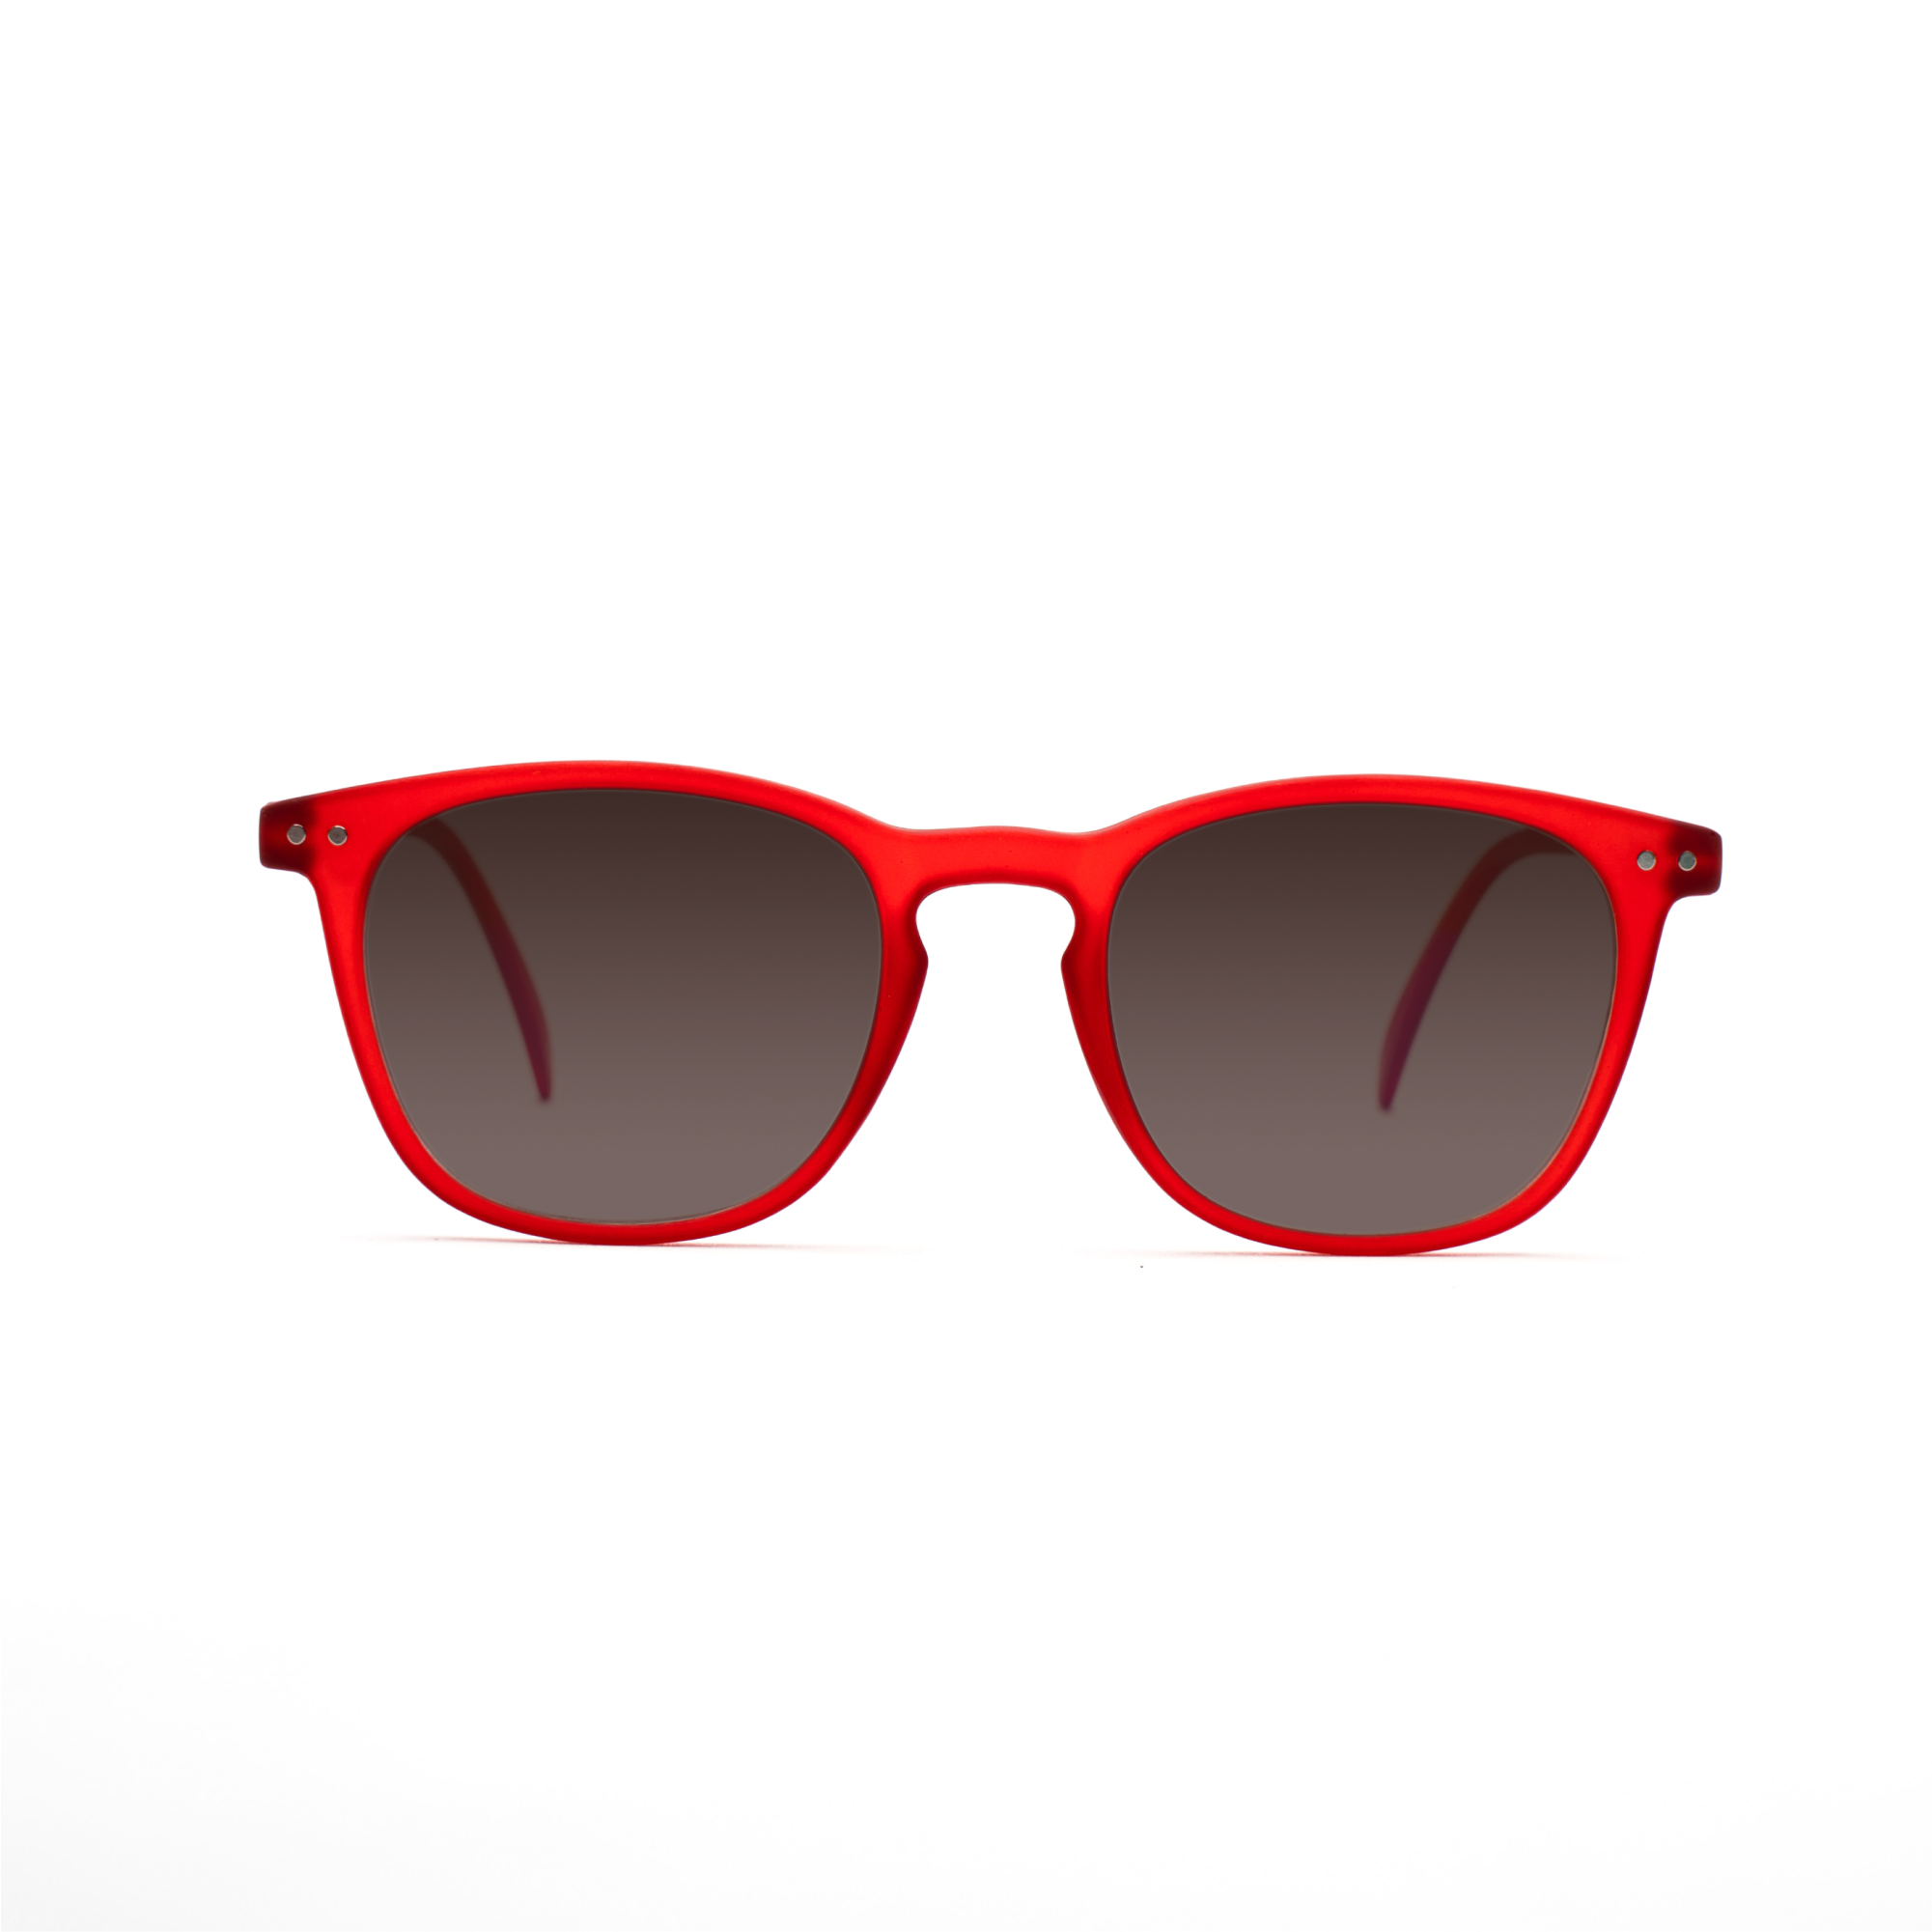 women's sunglasses – William UVSUN w - Red